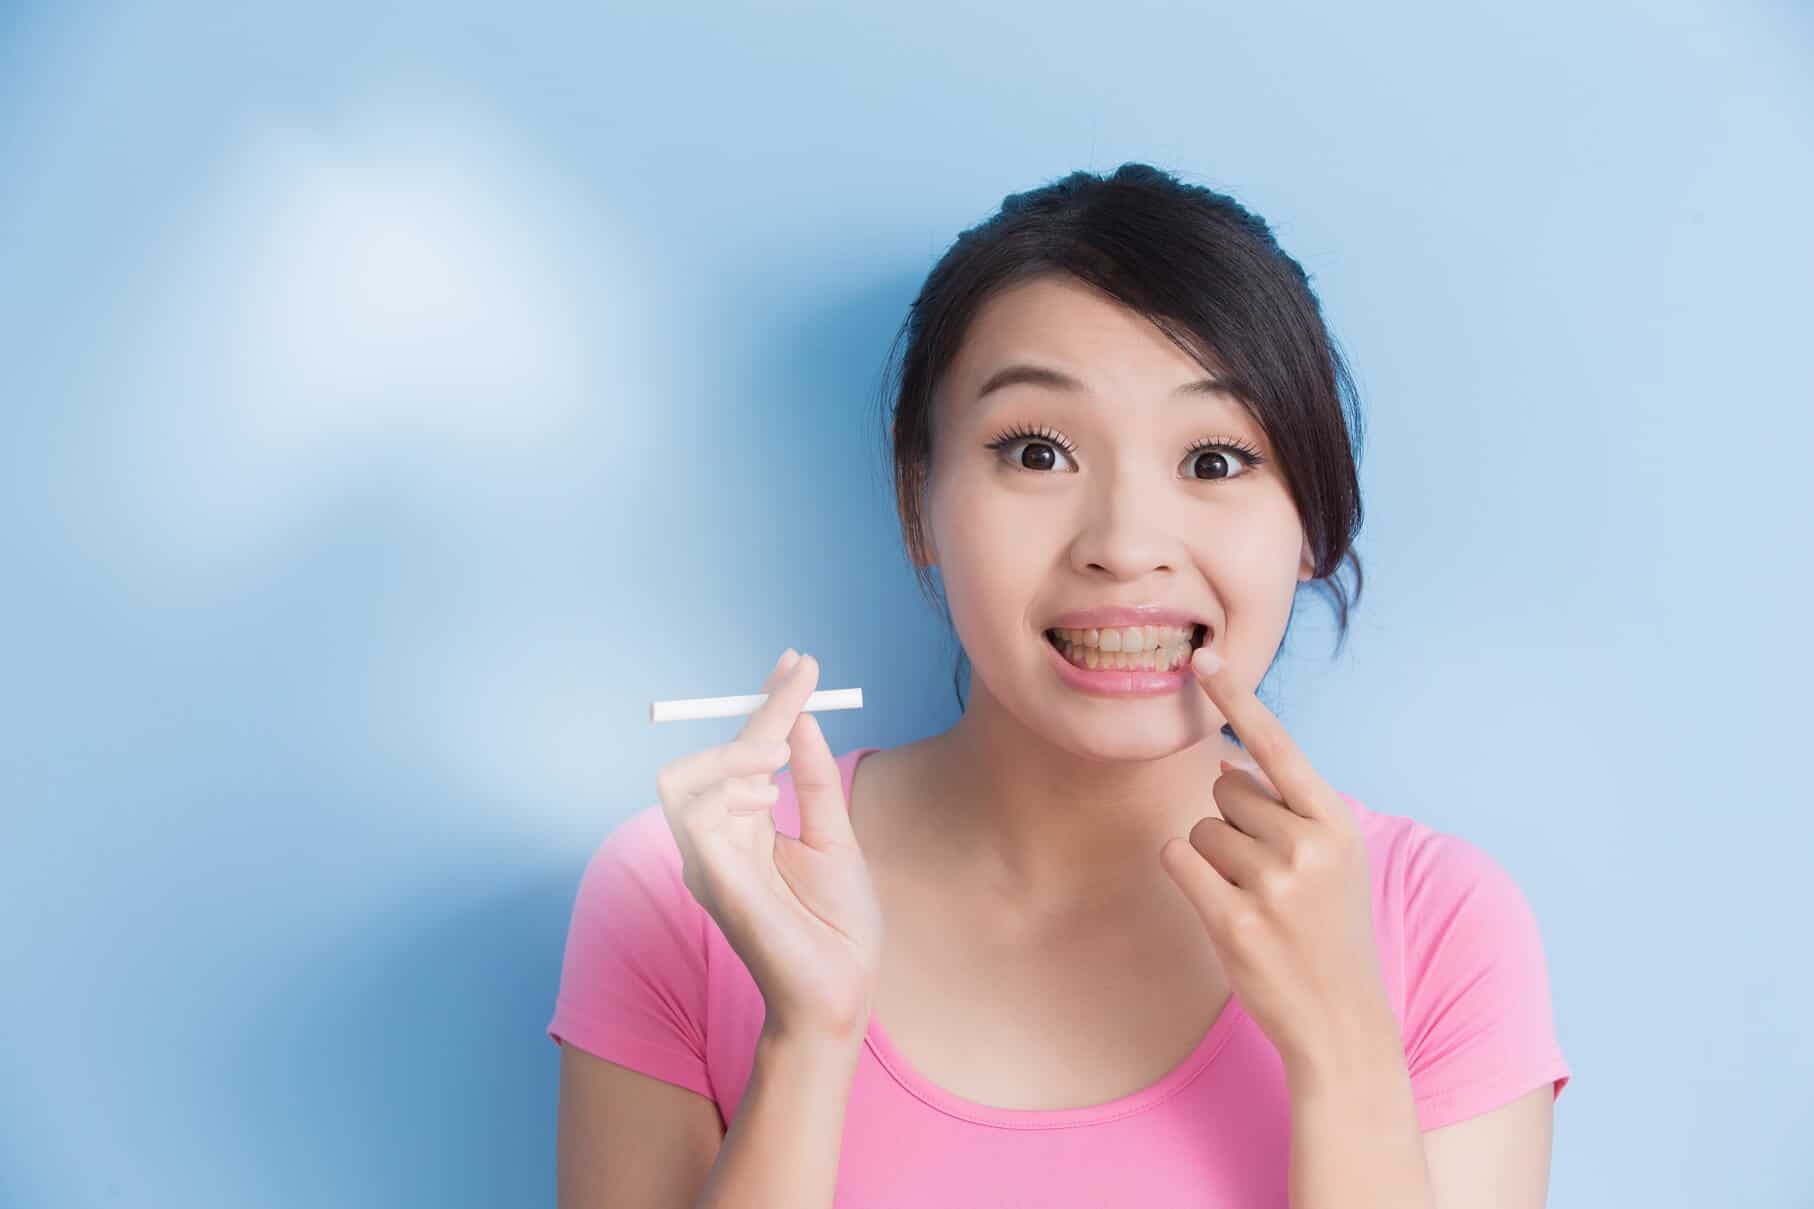 Junge asiatische Frau macht sich zu spät Gedanken über Zahngesundheit, sie hält in der rechten Hand eine Zigarette und zeigt mit der linken Hand auf ihre gelben Zähne